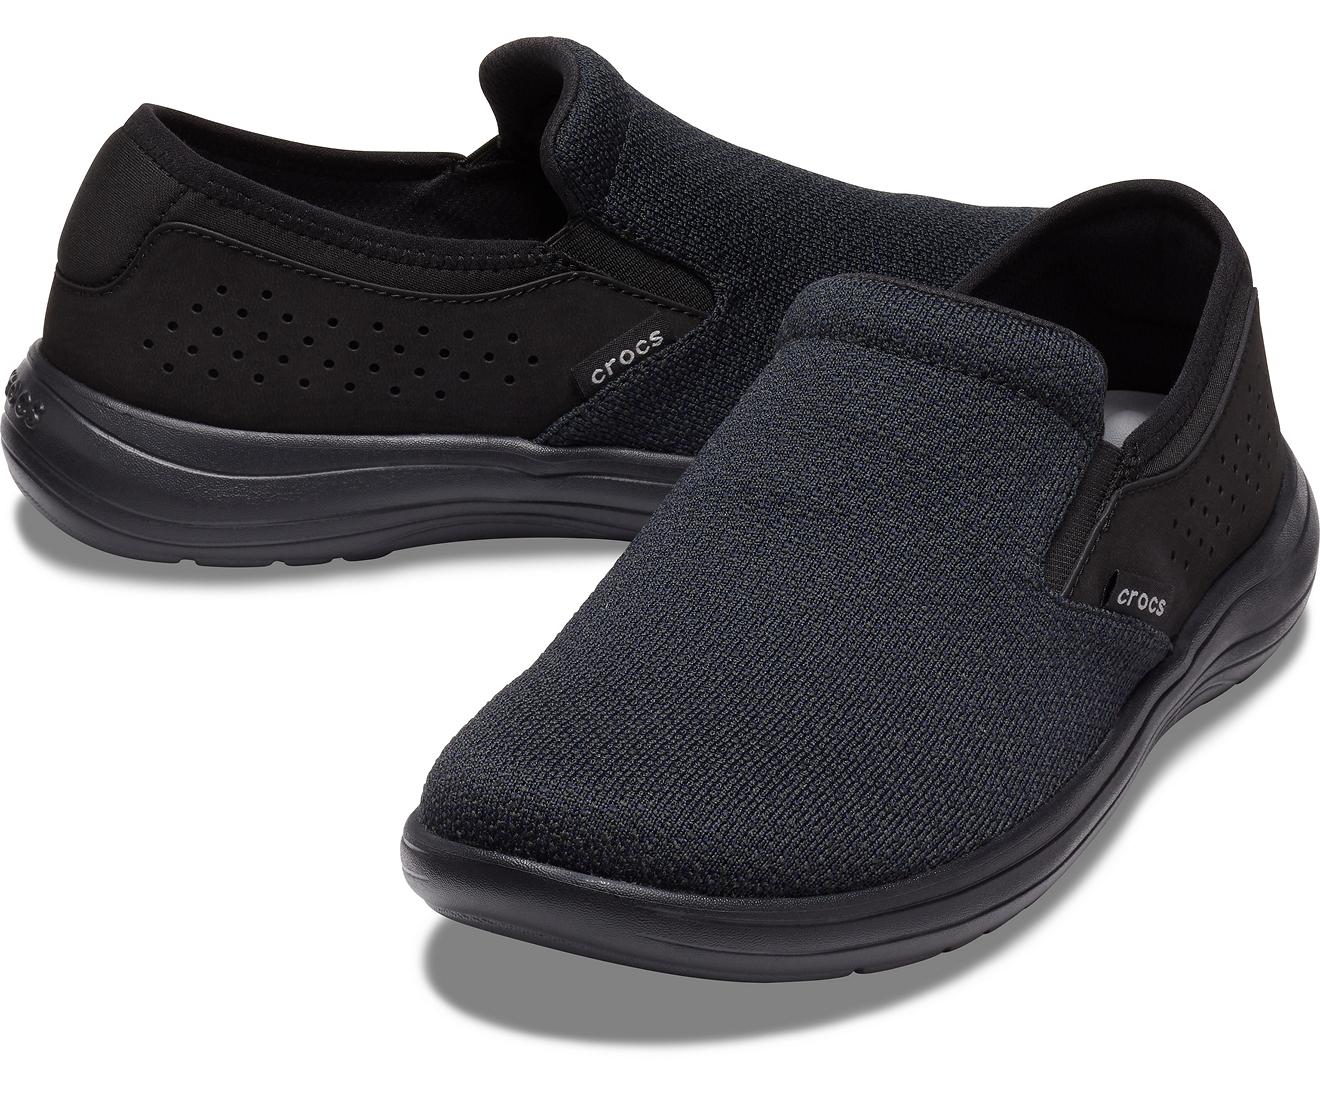 Crocs™ Reviva Slip-on in Black/Black (Black) for Men - Lyst